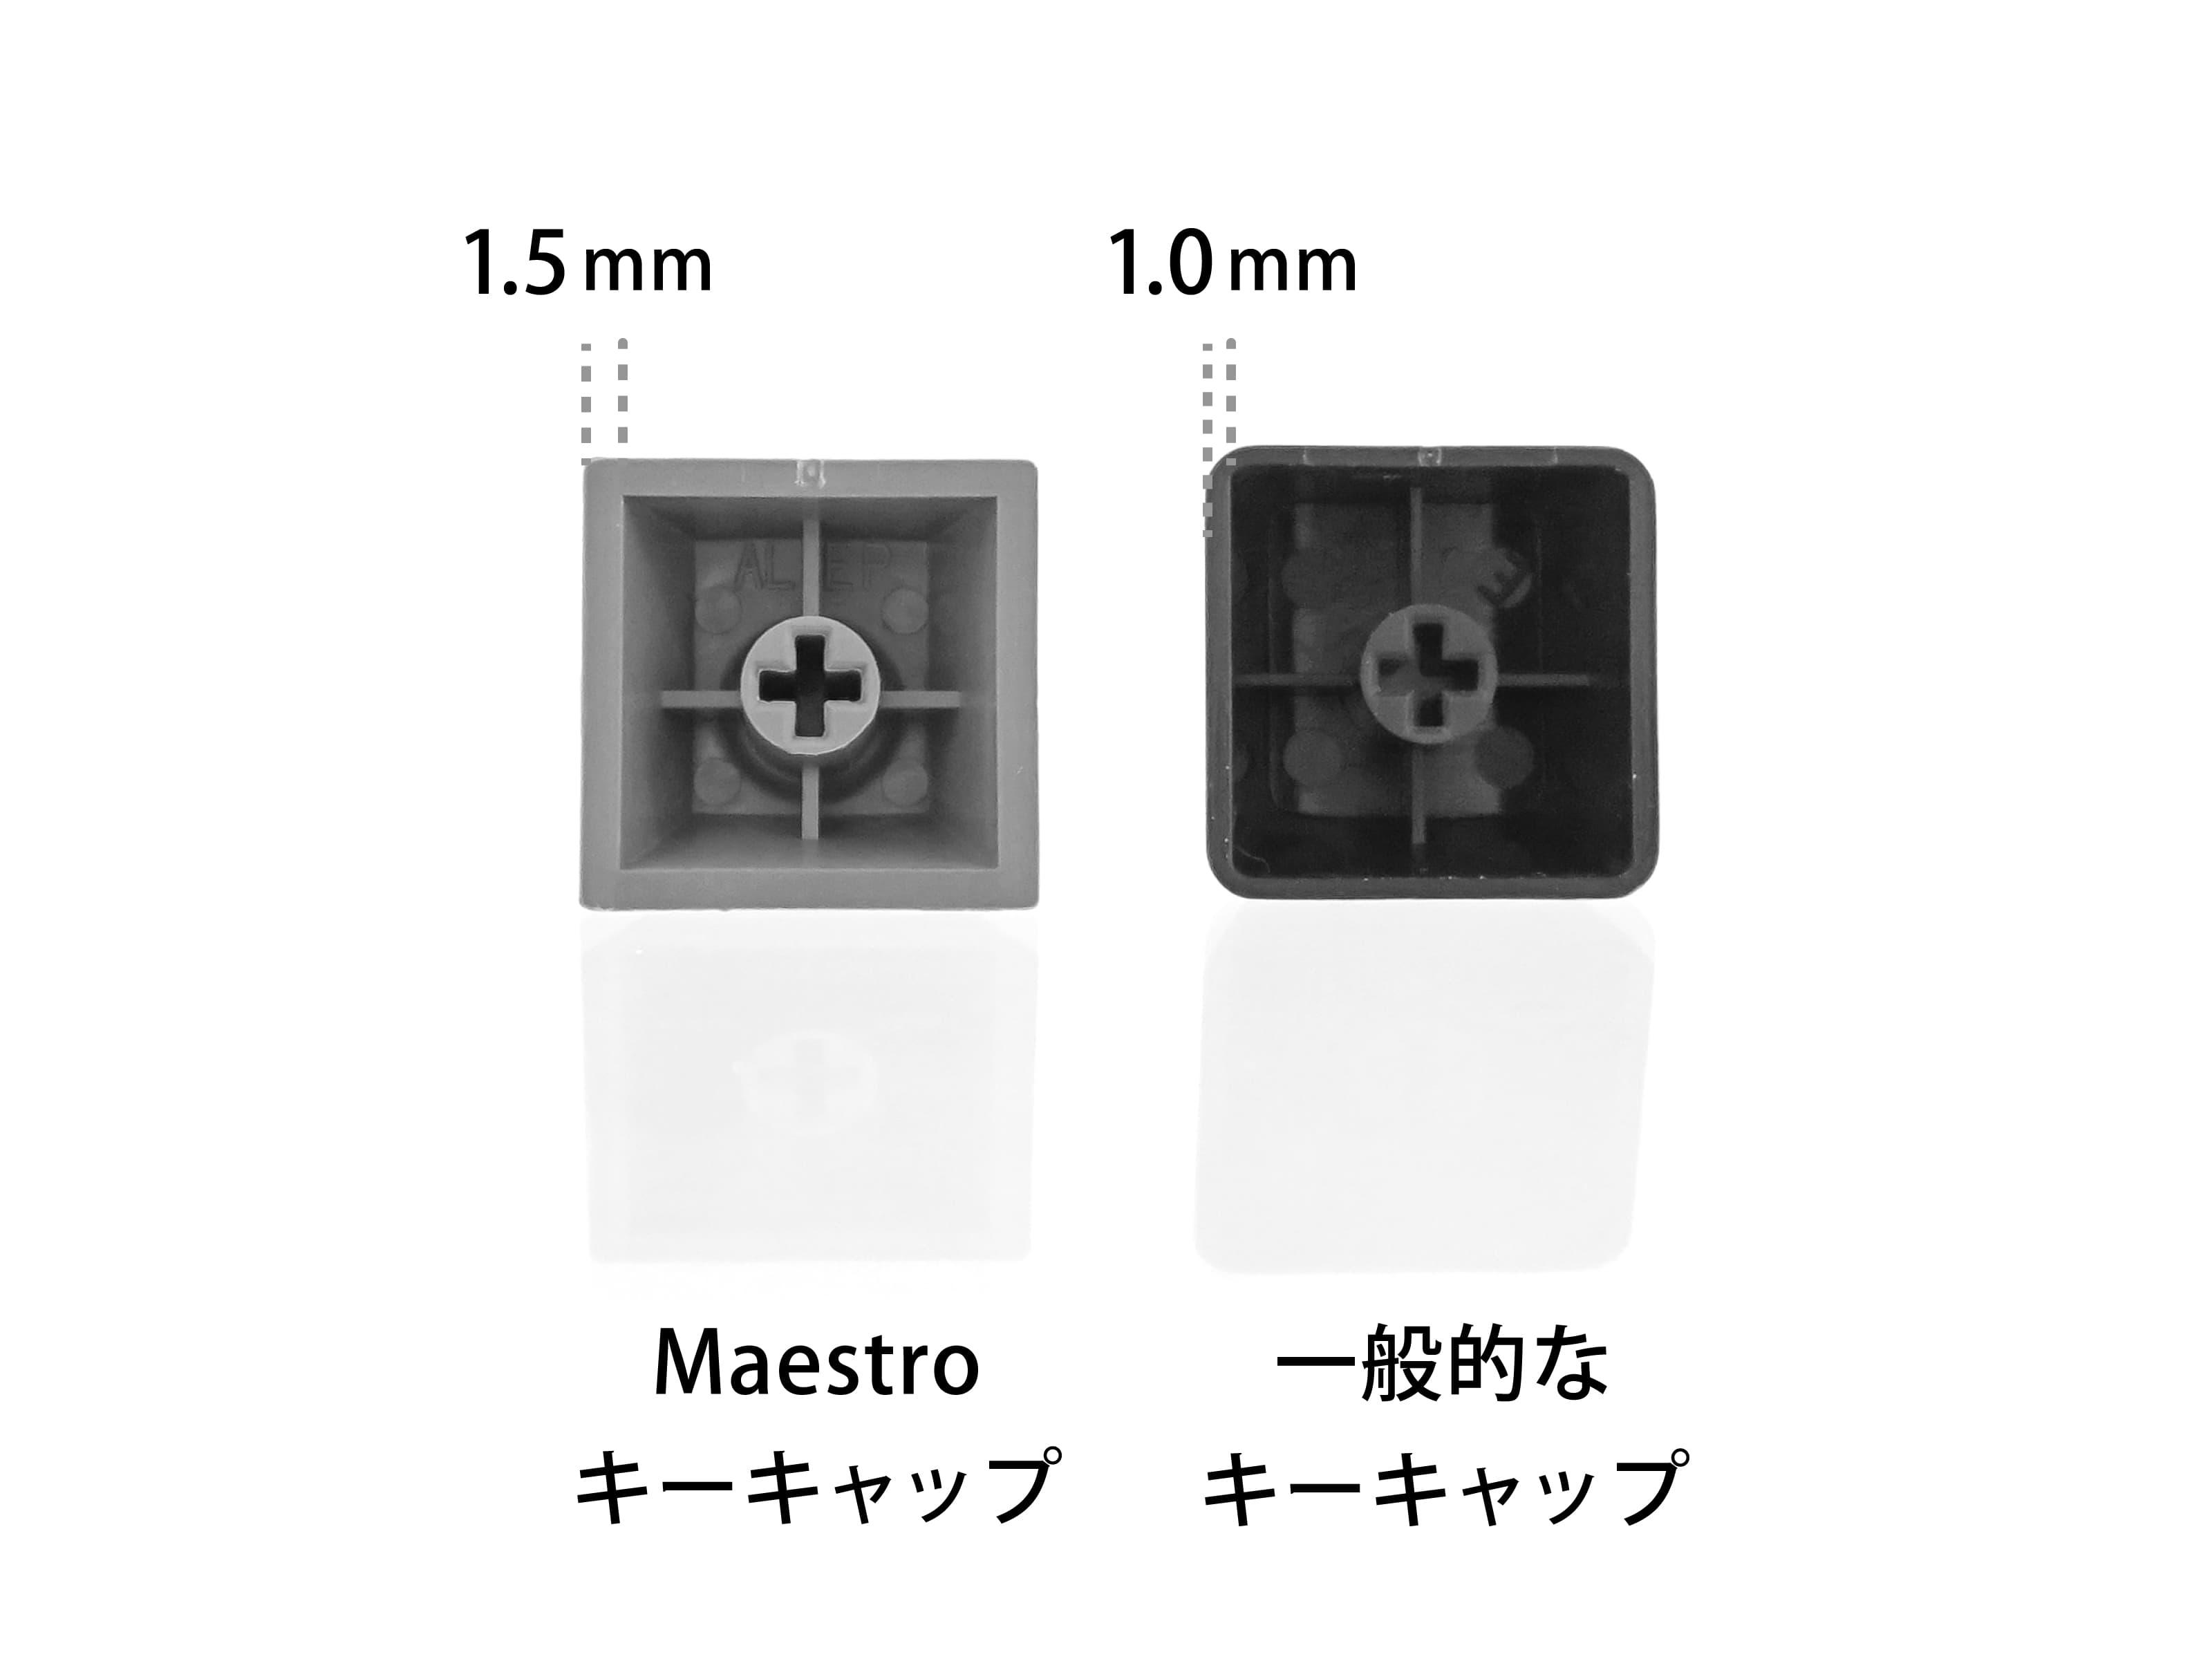 【2021正規激安】 アーキス メカニカル キーボード Maestro FL 日本語配列 キー数: 108(かな印字有り)キートップ引き抜き